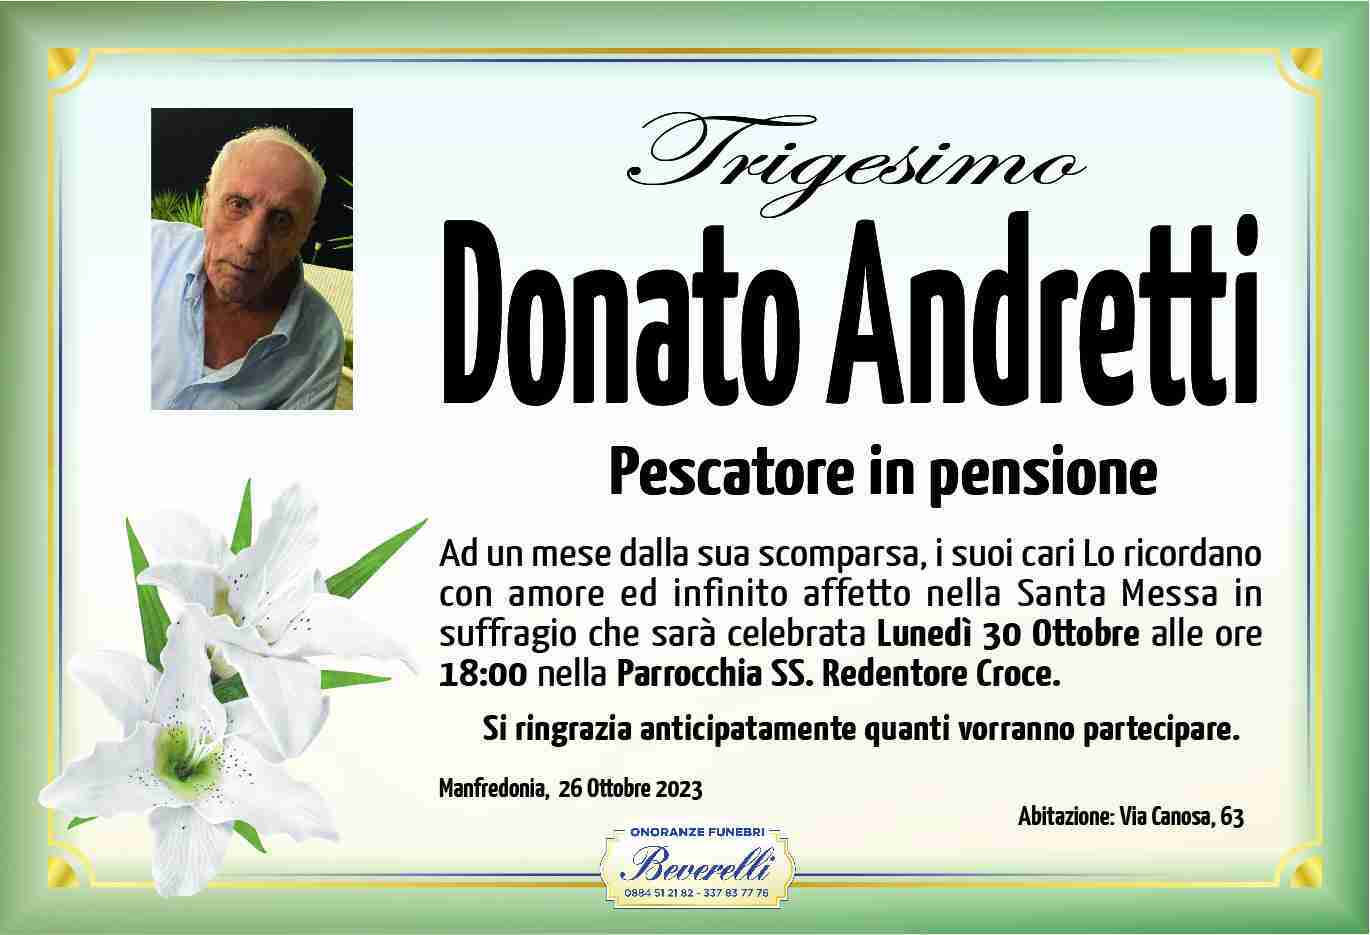 Donato Andretti